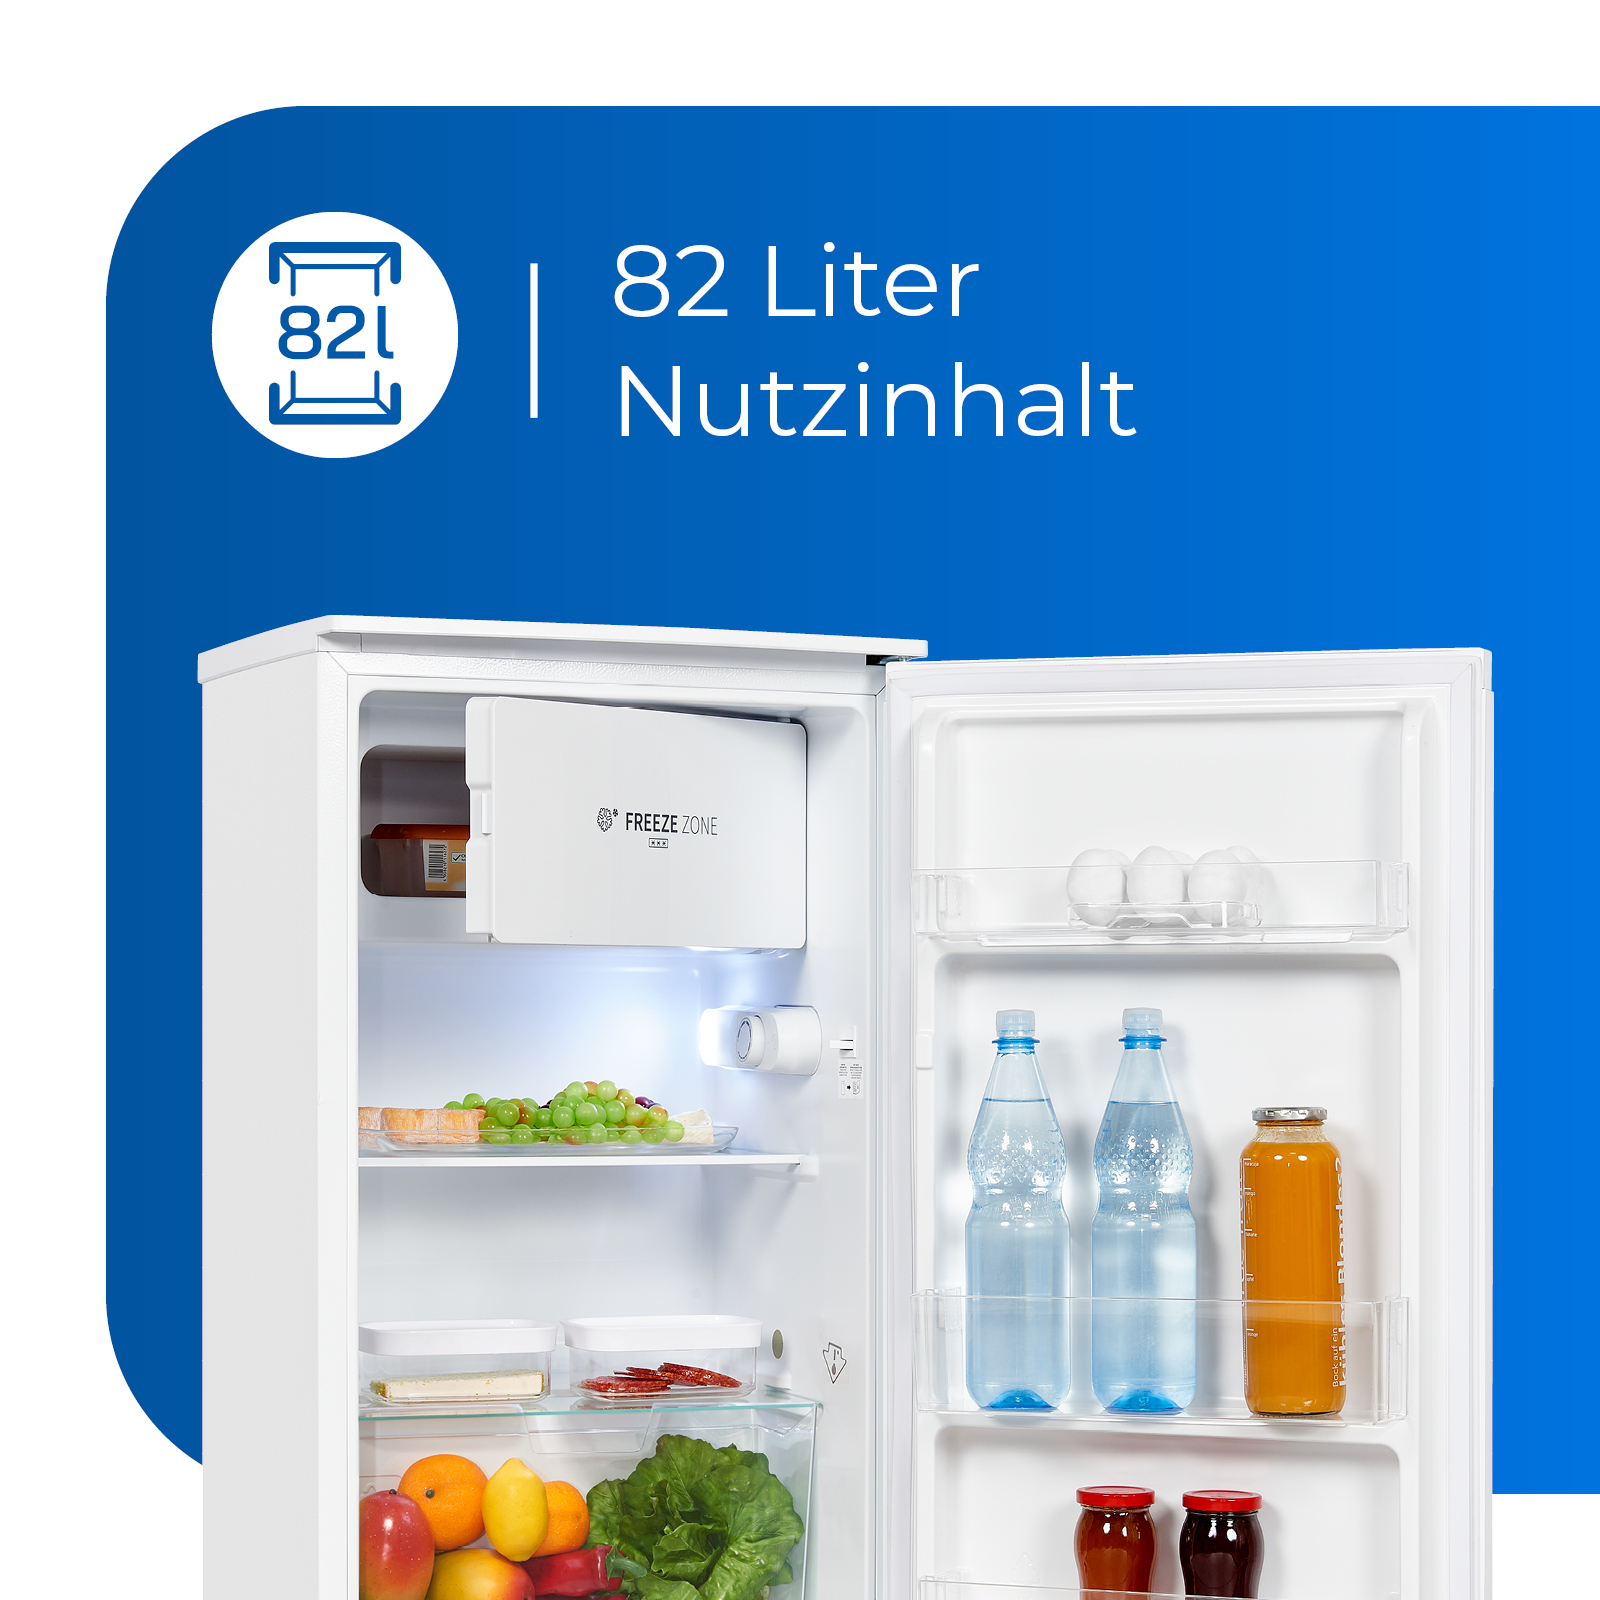 EXQUISIT KS117-3-010E weiss Freistehende Kühlschränke mm 850 (E, hoch, Weiß)